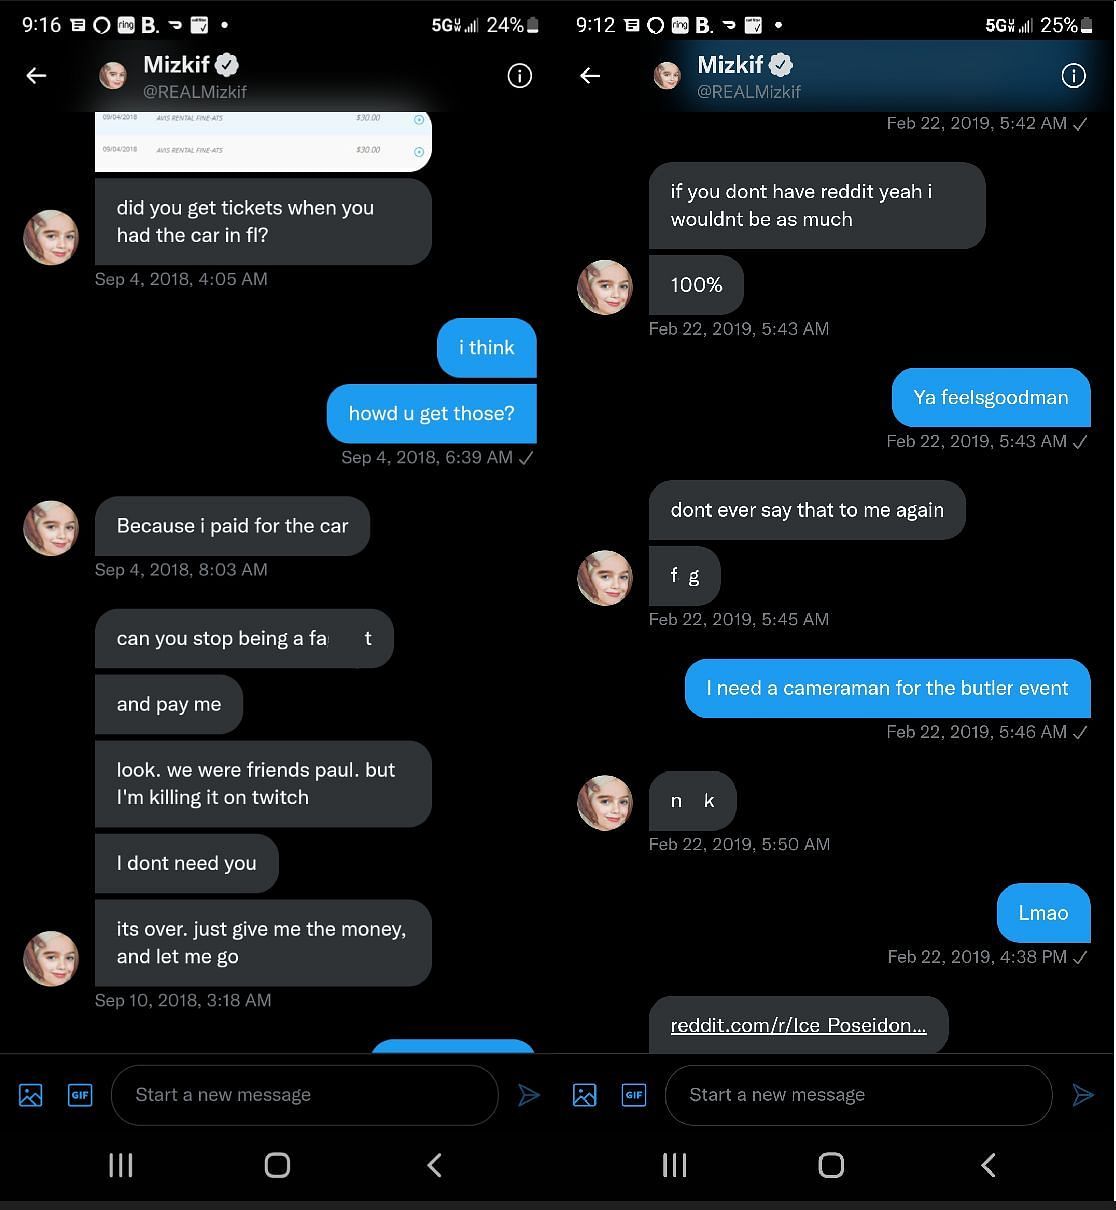 Ice Poseidon leaking old DM conversation featuring Mizkif 1/2 (Images via Twitter)